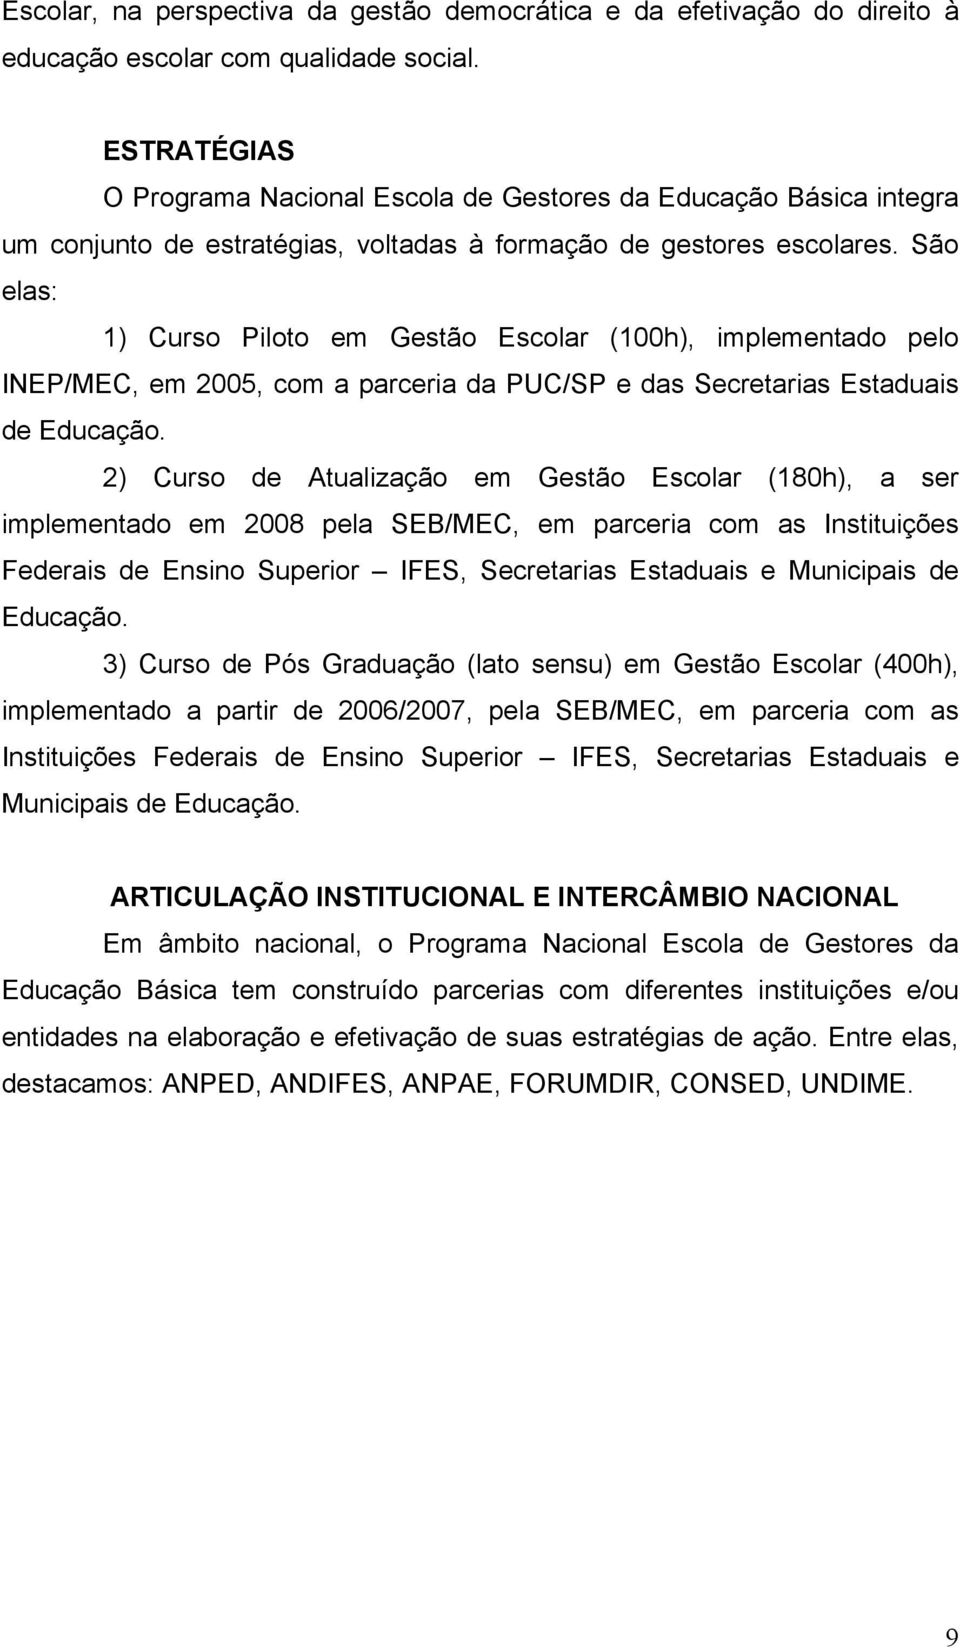 São elas: 1) Curso Piloto em Gestão Escolar (100h), implementado pelo INEP/MEC, em 2005, com a parceria da PUC/SP e das Secretarias Estaduais de Educação.